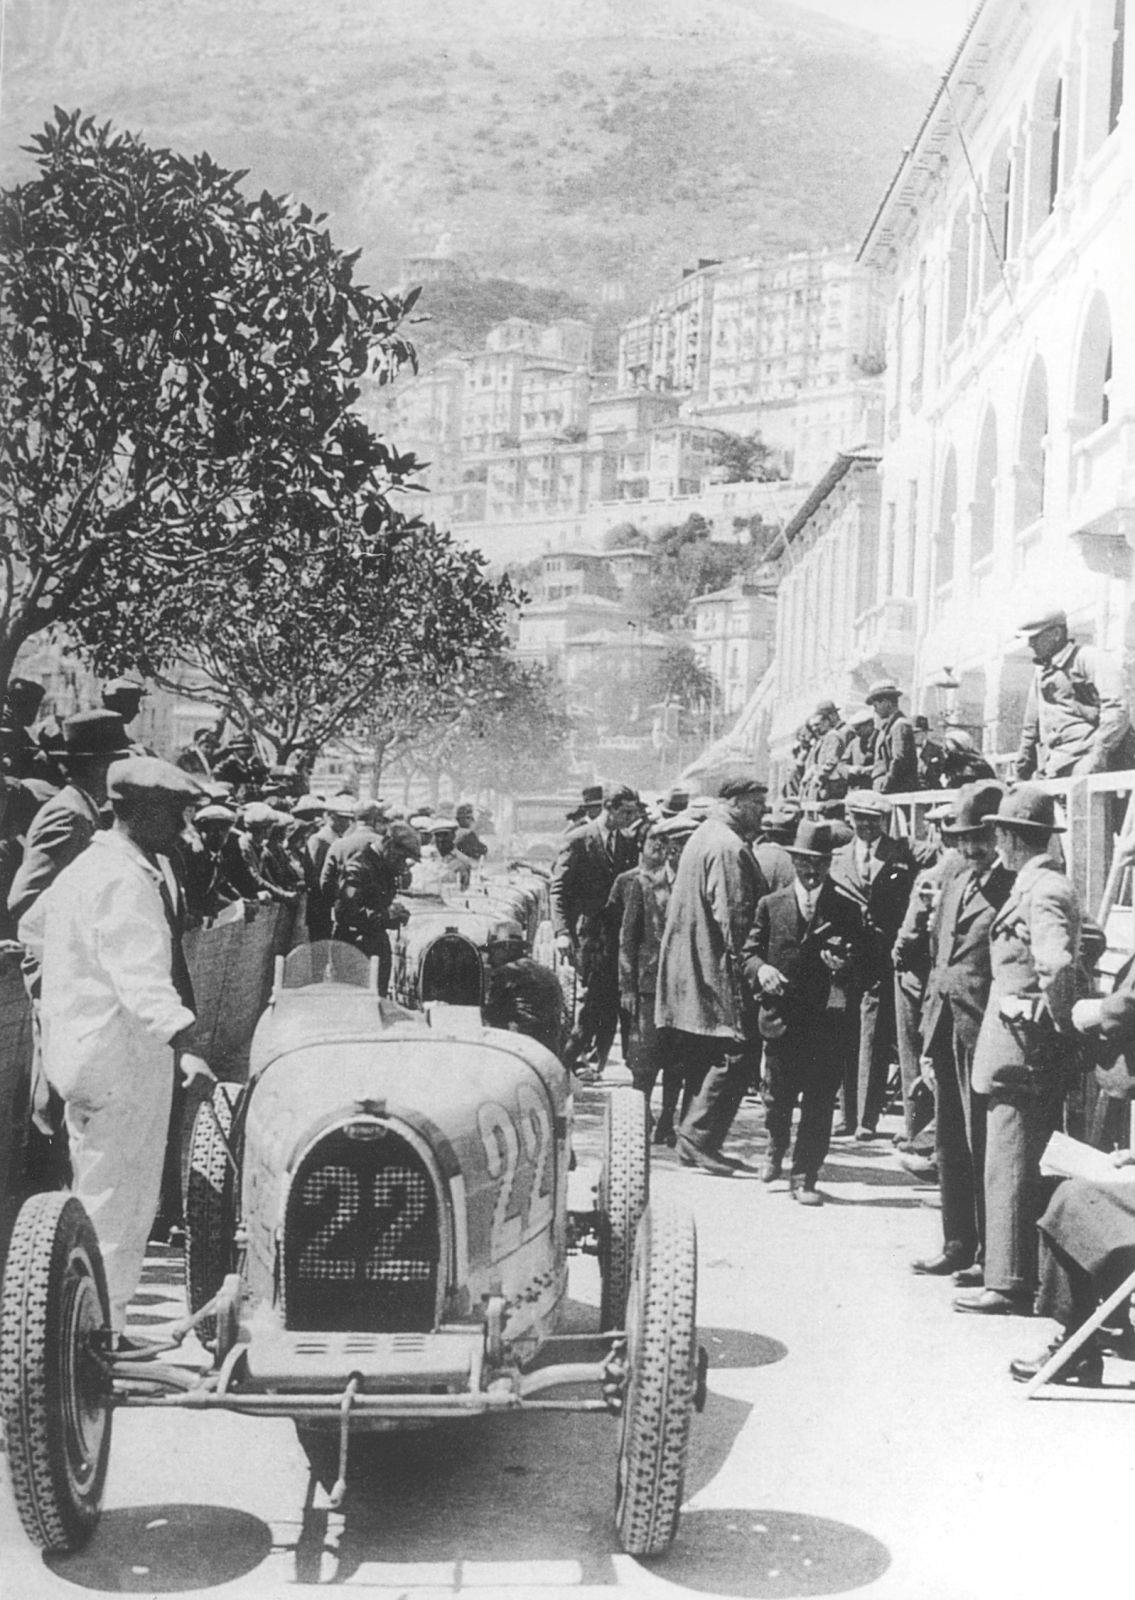 The Bugatti Type 51 at the Monaco Grand Prix in 1931.